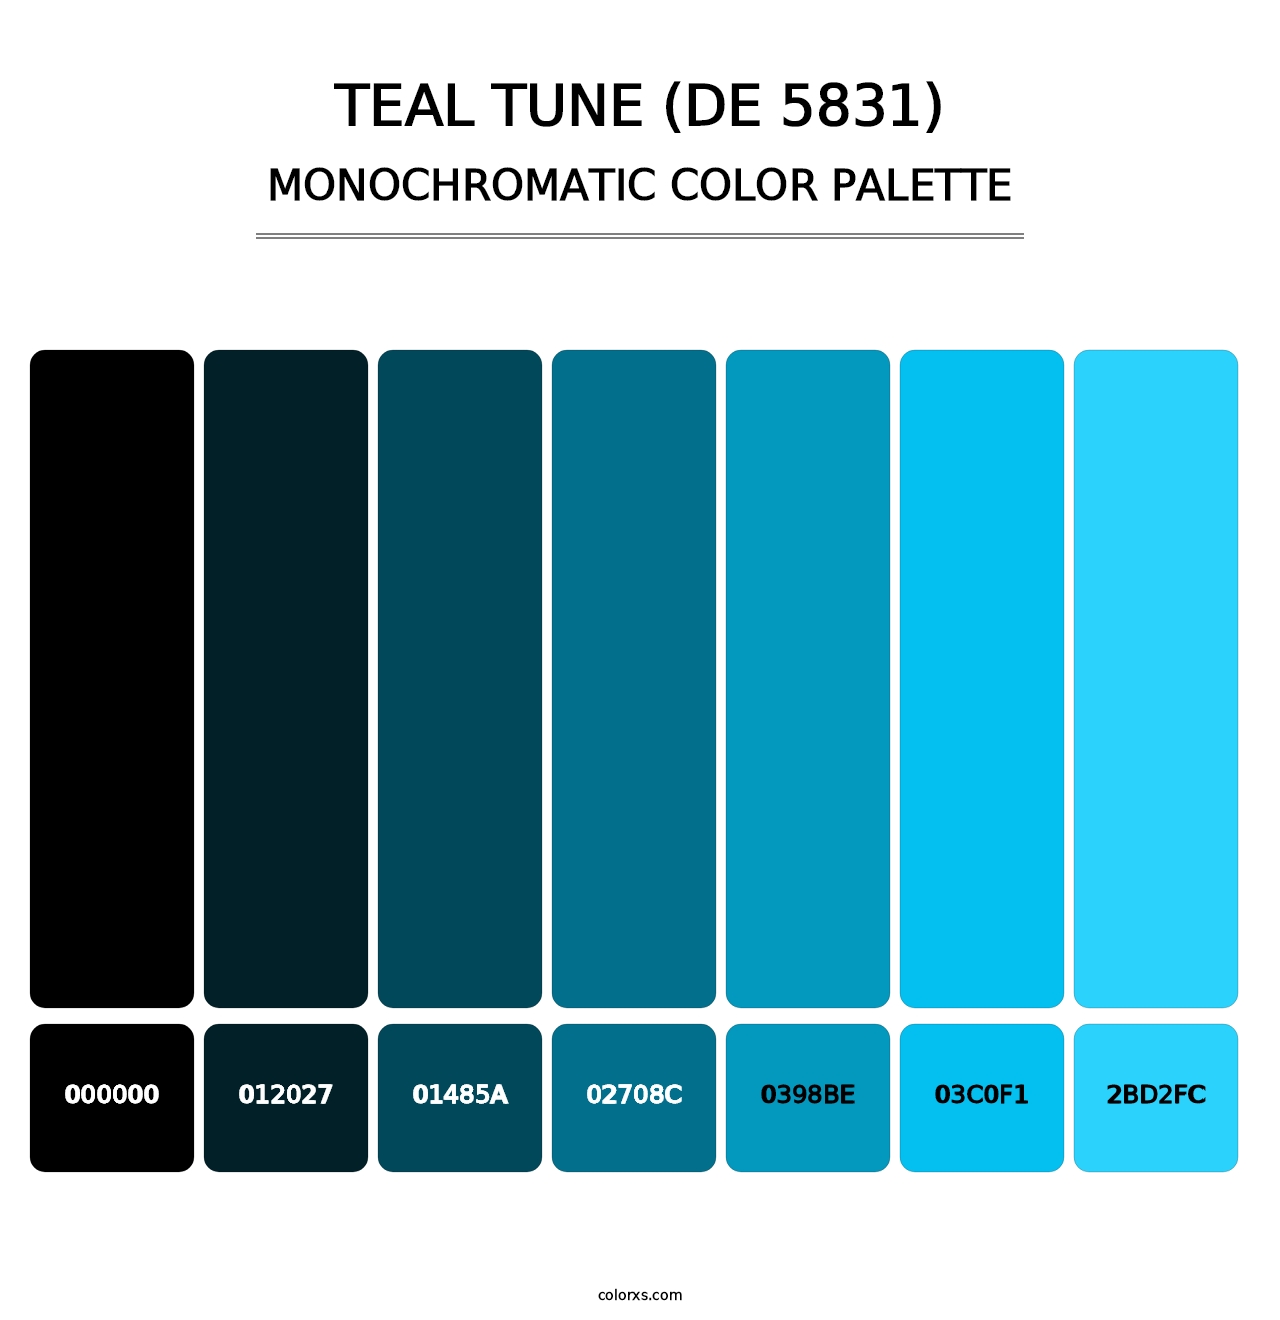 Teal Tune (DE 5831) - Monochromatic Color Palette